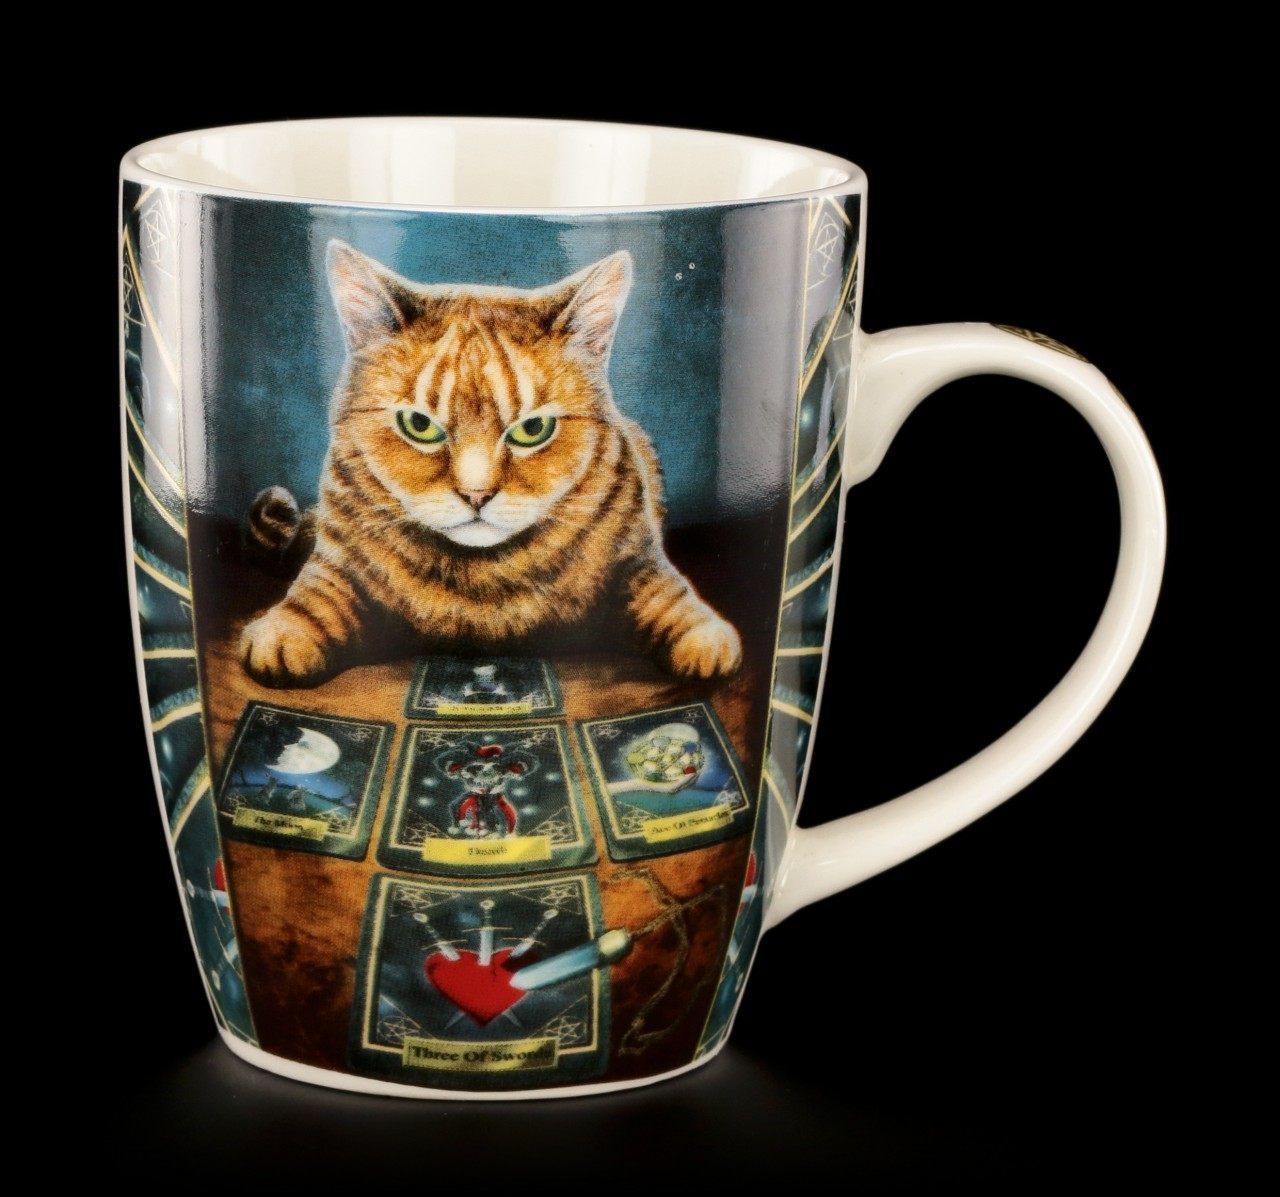 Porzellan Tasse mit Katze - The Reader